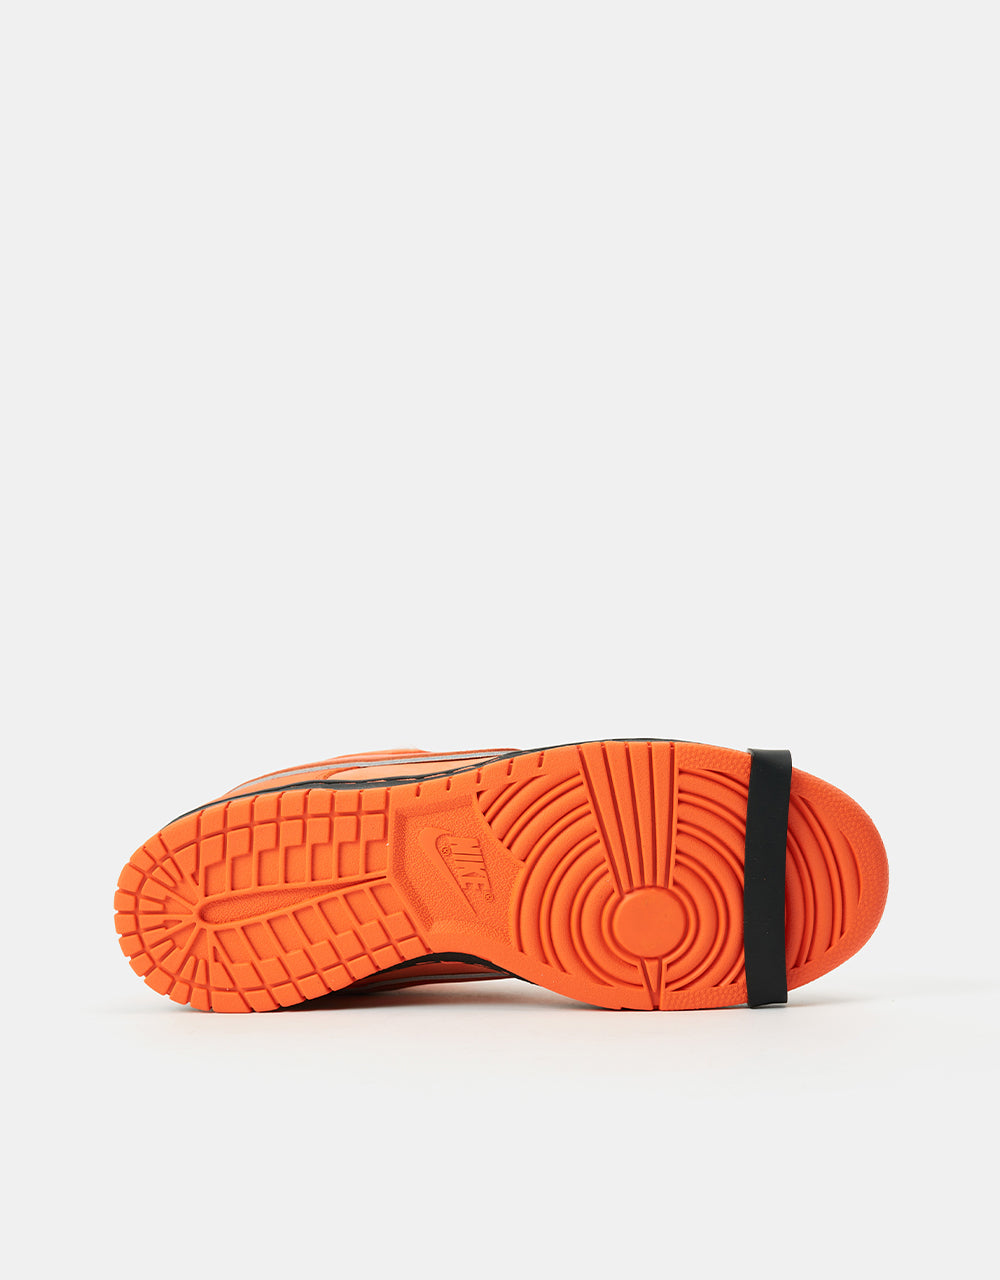 Nike SB 'Concepts Orange Lobster' Dunk Low OG QS